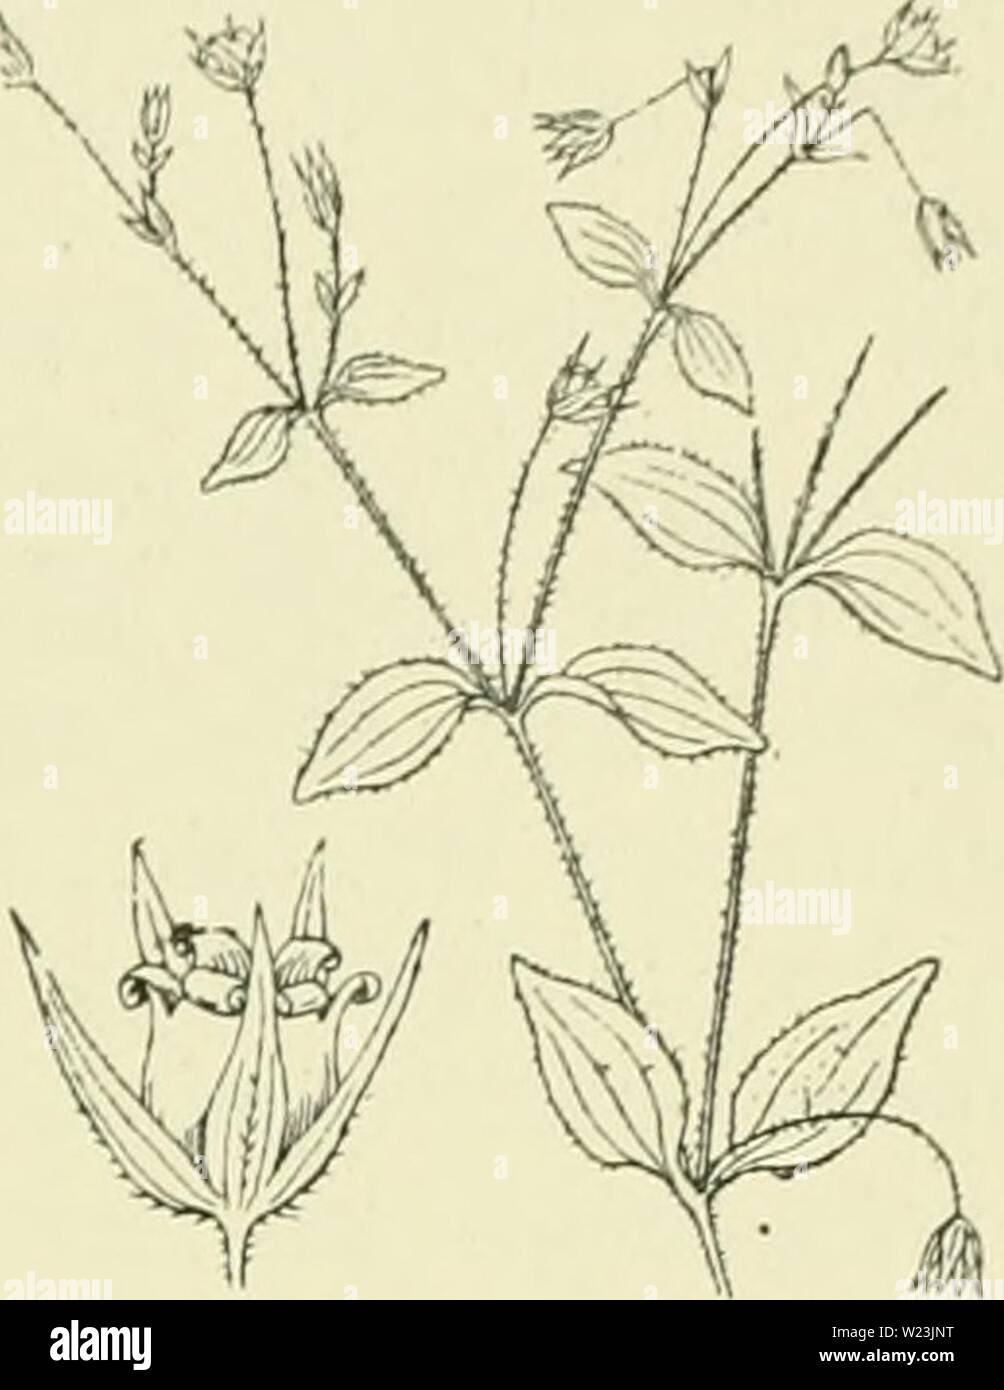 Archive image from page 168 of De flora van Nederland (1909-11). De flora van Nederland  defloravannederl02heuk Year: 1909-11.  FAMILIE 32. — CARYOPHYLLACEAE. — 139 10. Moehrinsii»') 1 M. trinèrvia-) Clairv. Bosch zaïidkruid (fi. 158). Uit den wortel komt een bijna steeds sterk vertakte, opstijgende, soms rechtopgaande stengel , die evenals de meeste andere deelen der plant kort behaard is. De bladen zijn eirond , spits, 3-5-nervig, de onderste zijn kleiner, gesteeld, met iets hartvormigen voet, de hoogere zijn grooter en bijna ongesteeld. De bloemen zijn wit en staan in een bebladerd bijscher Stock Photo